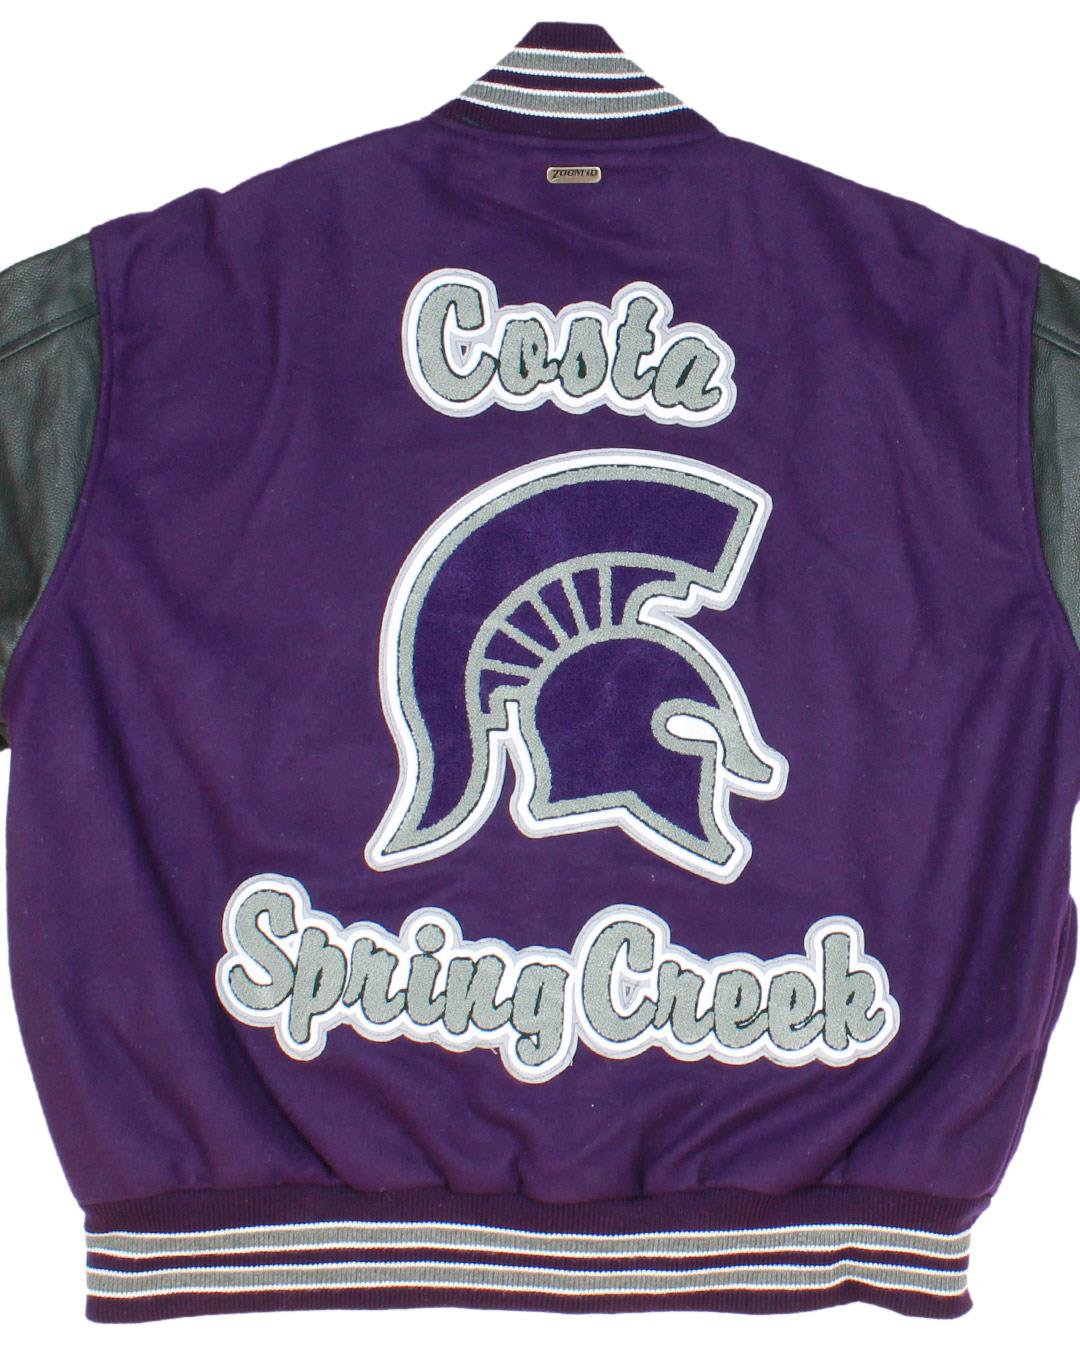 Spring Creek High School Letterman Jacket, Spring Creek, NV - Back 2